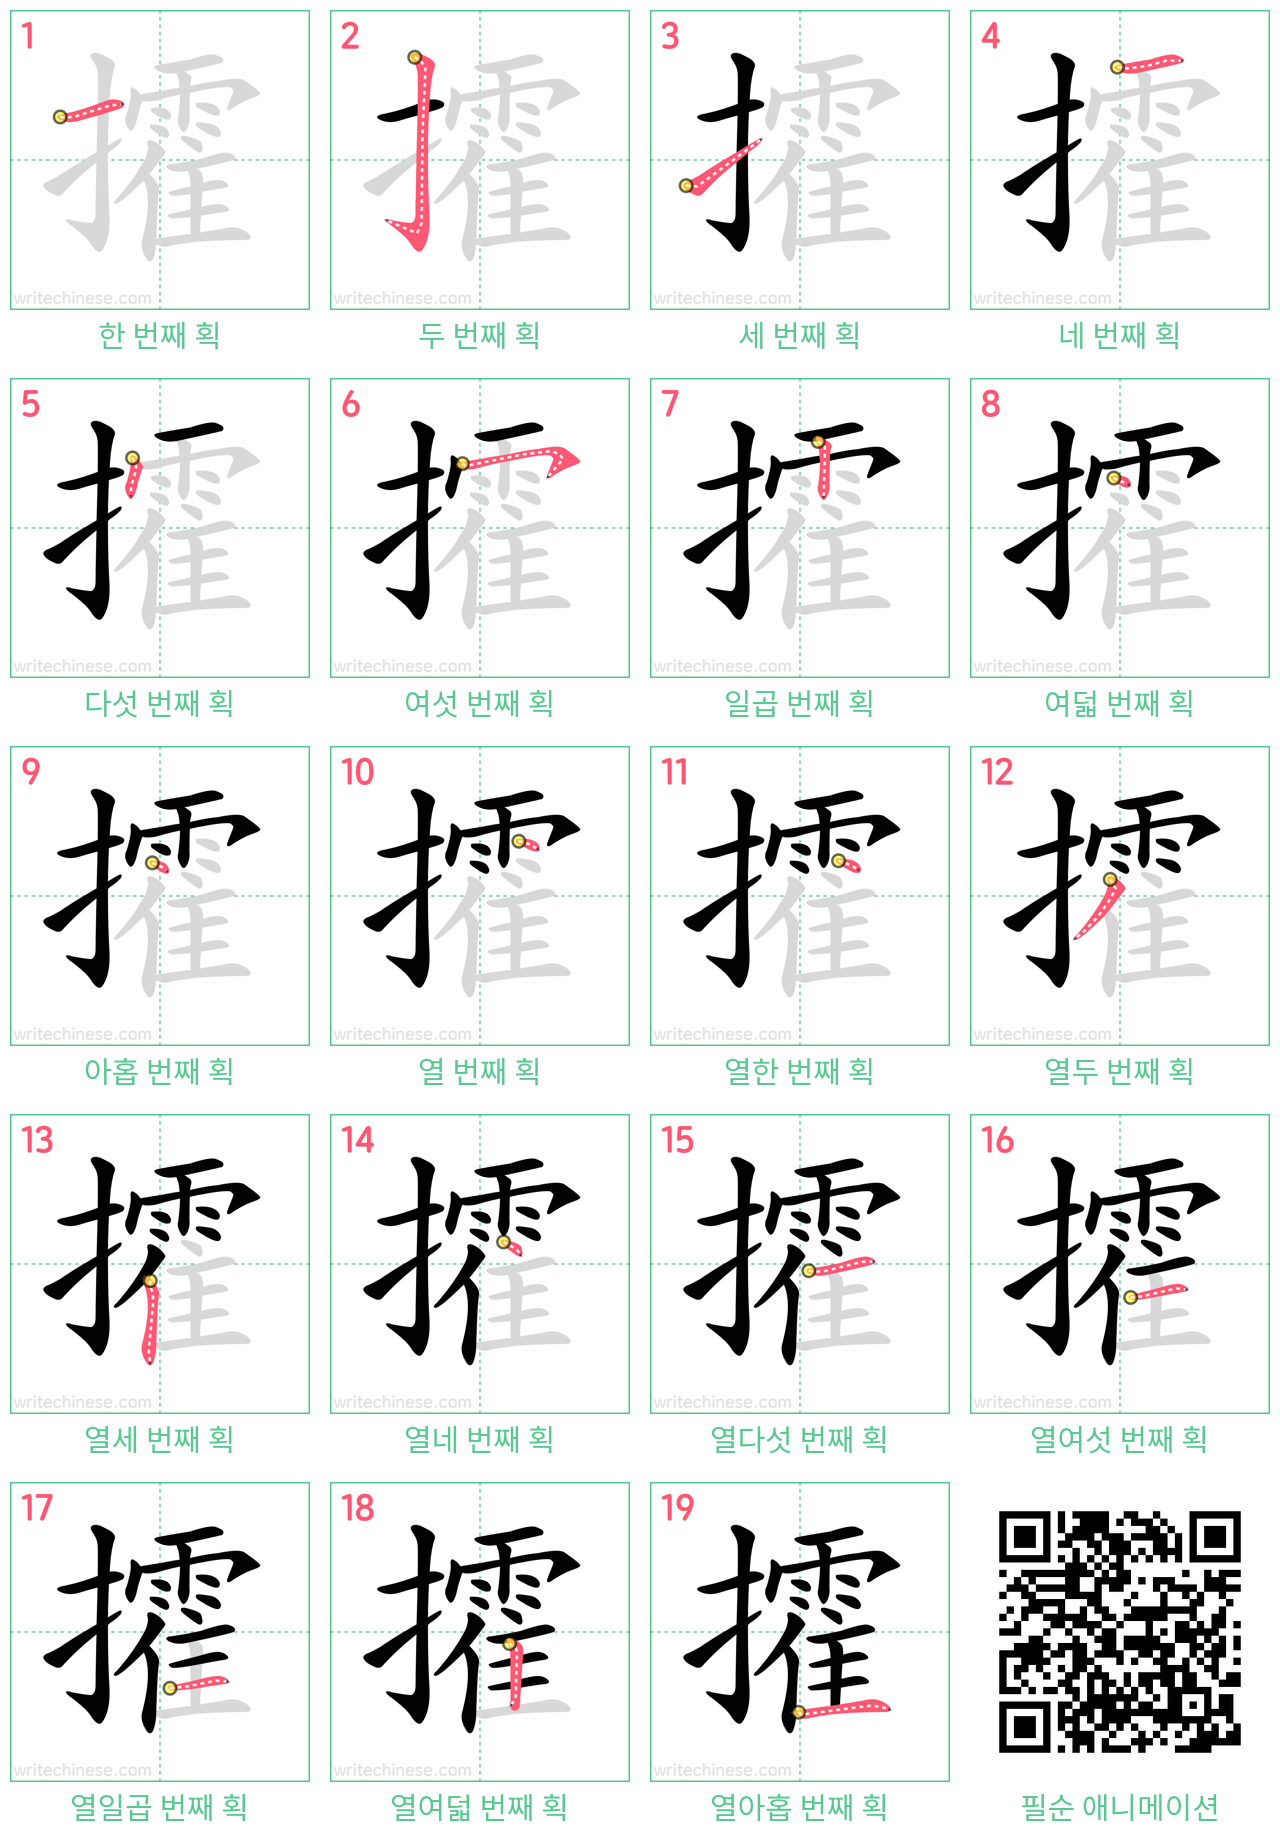 攉 step-by-step stroke order diagrams